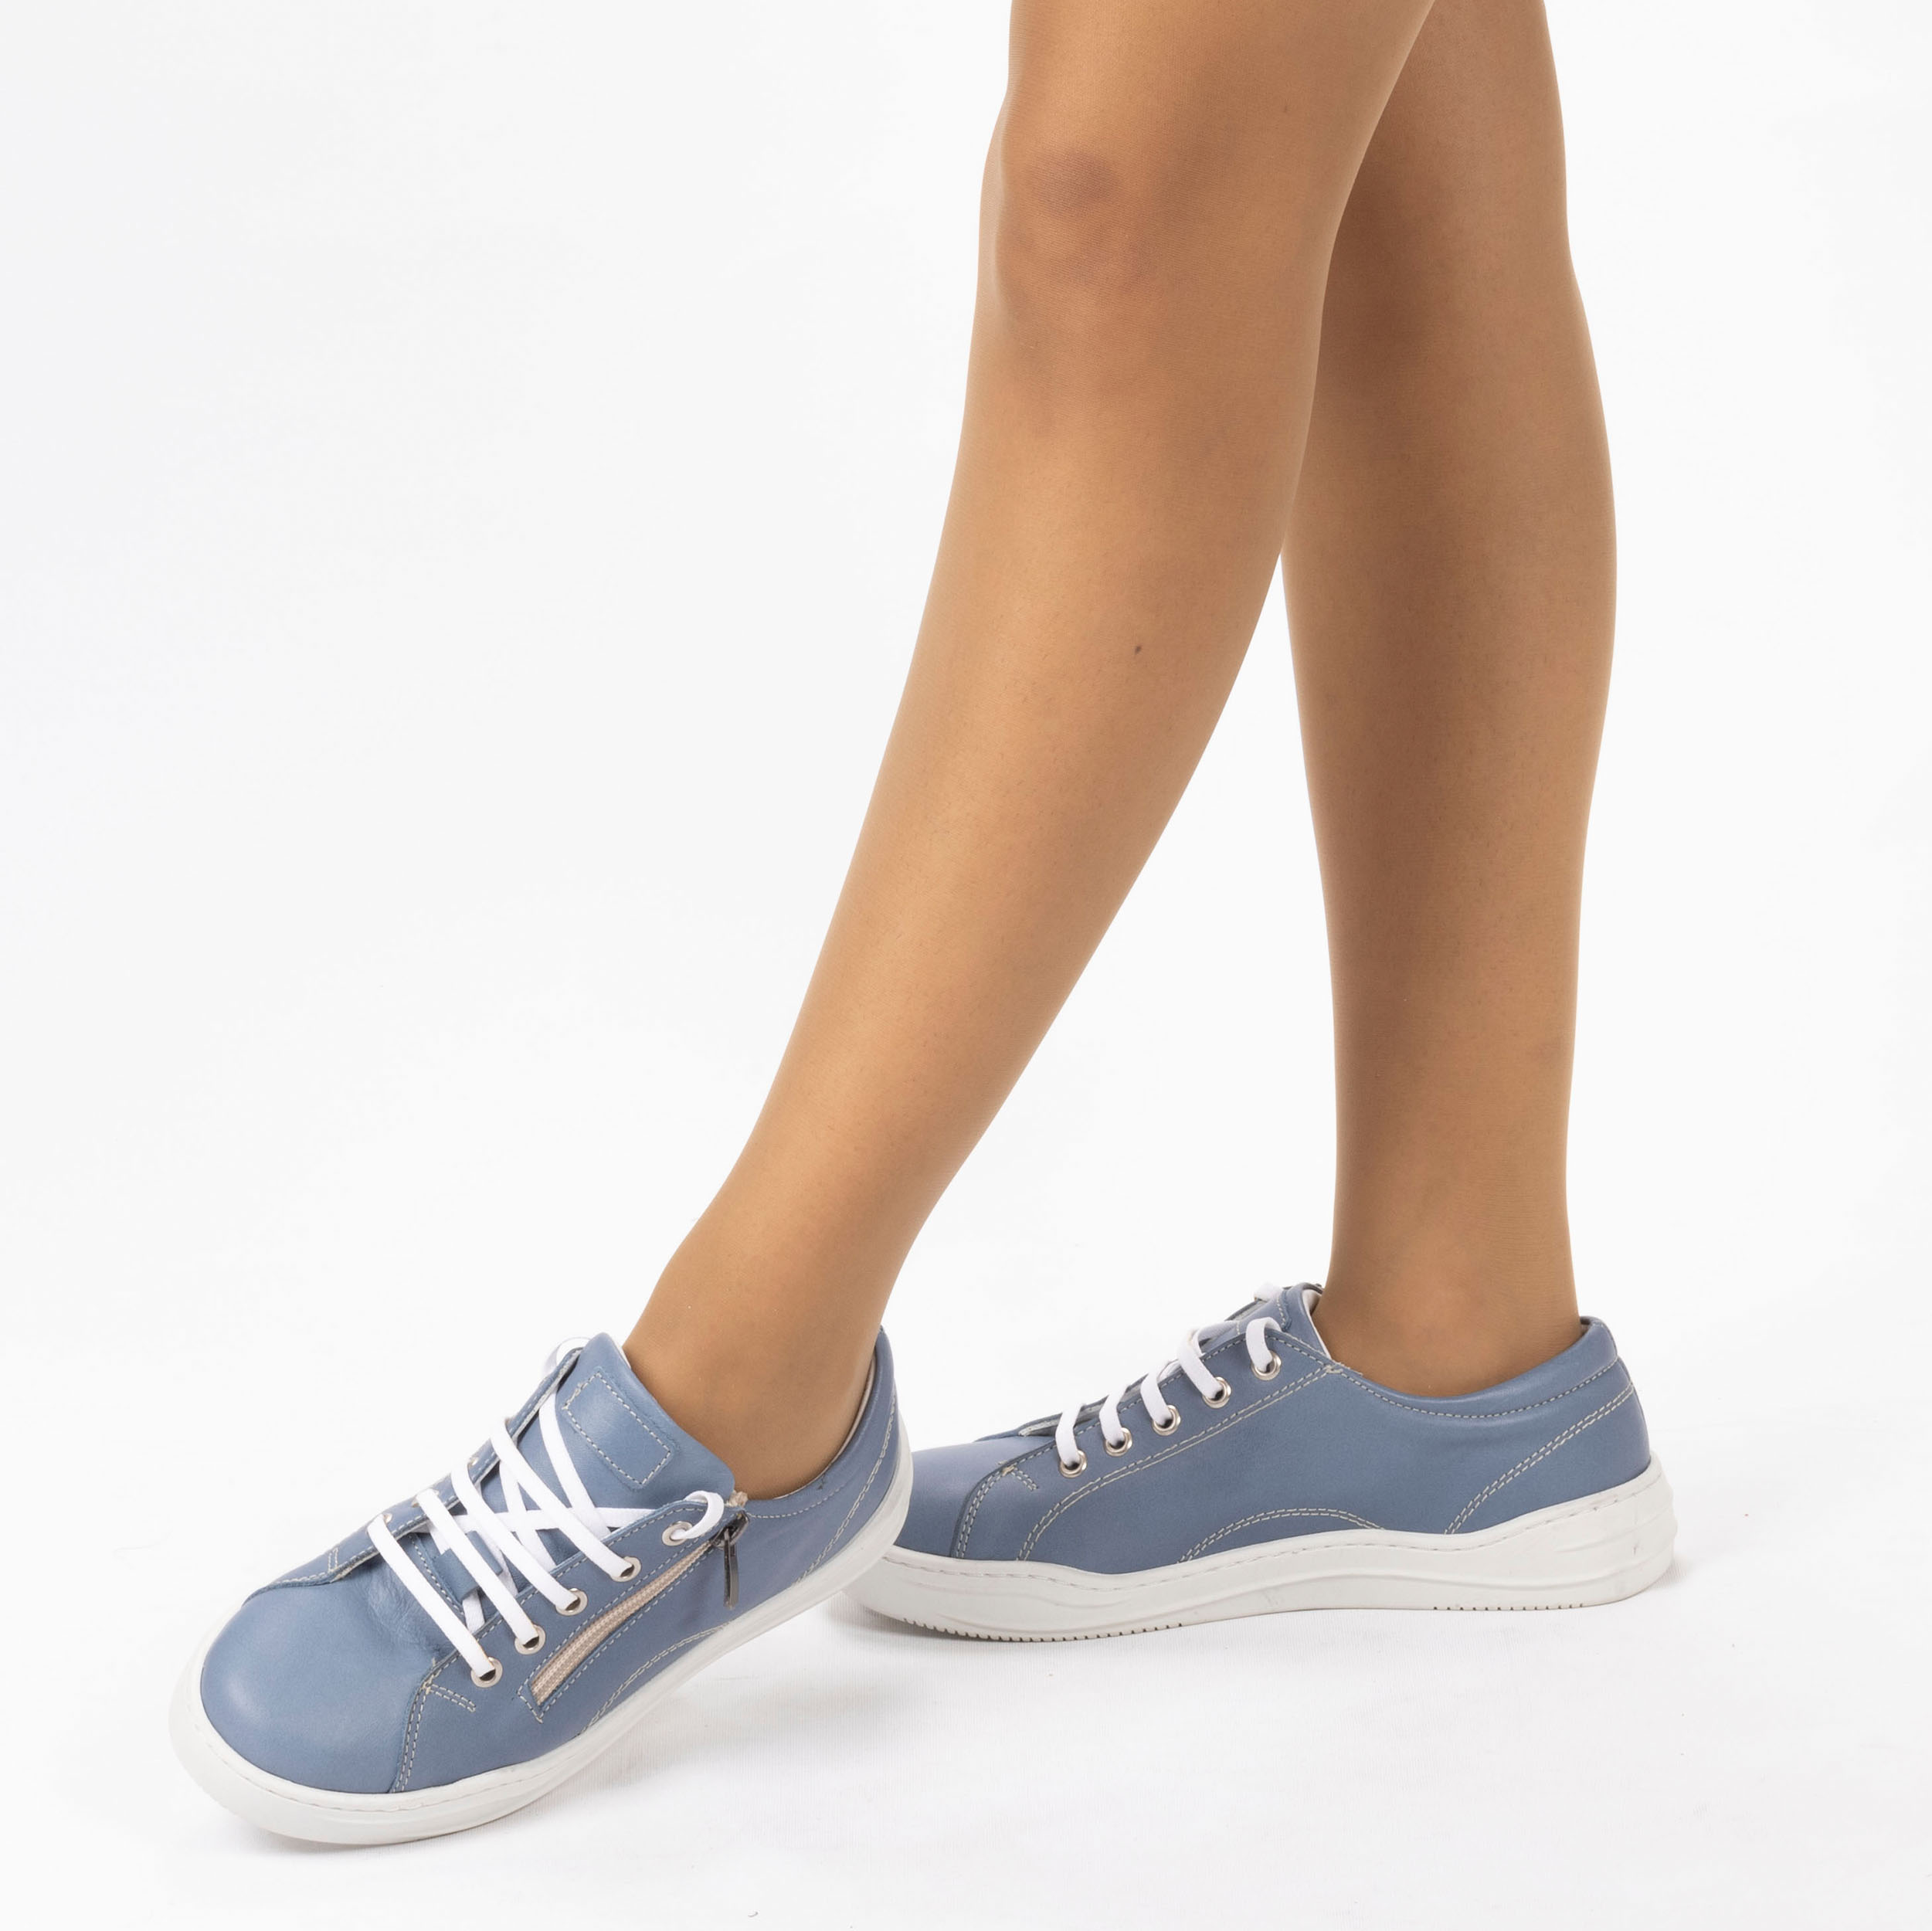 Kadın Hakiki Deri Günlük Spor Ayakkabı / Sneakers, Renk: Anar Mavi, Beden: 36